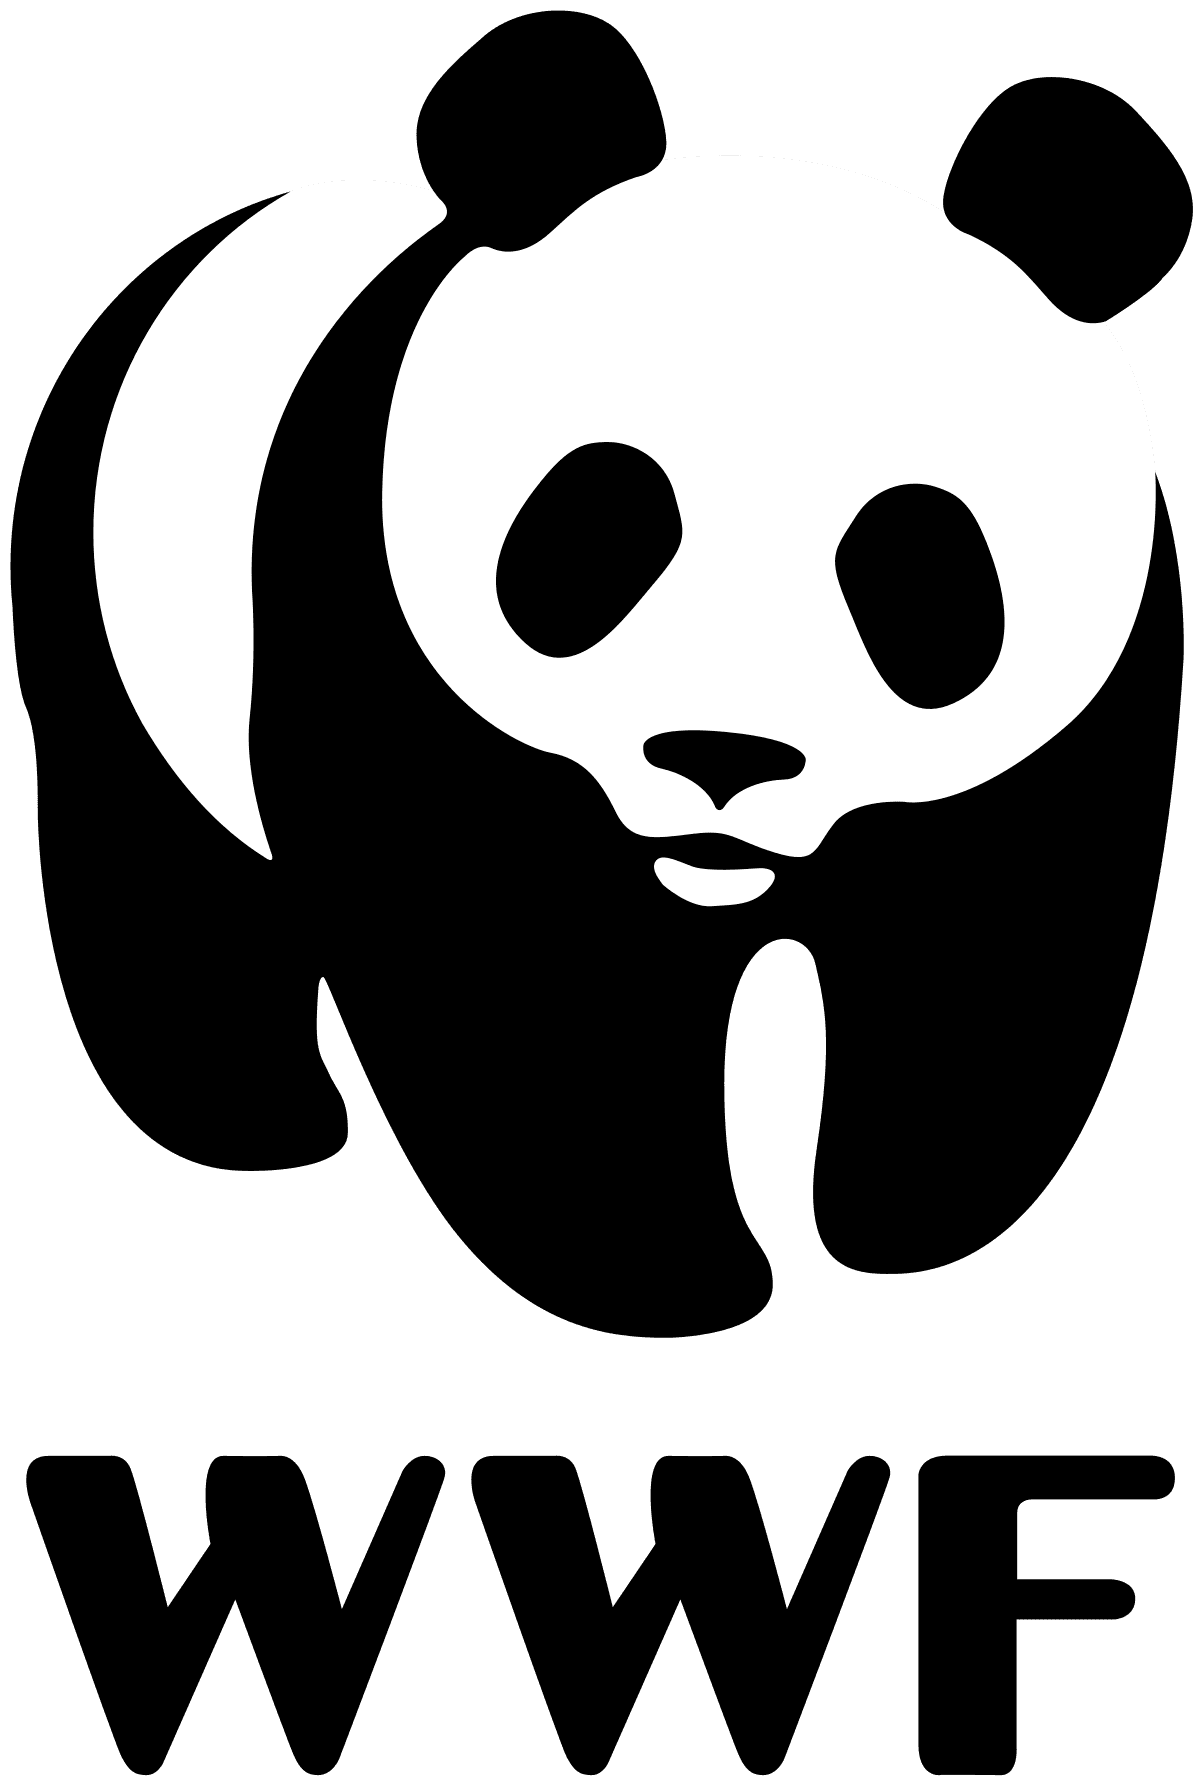 WWF-Canada logo